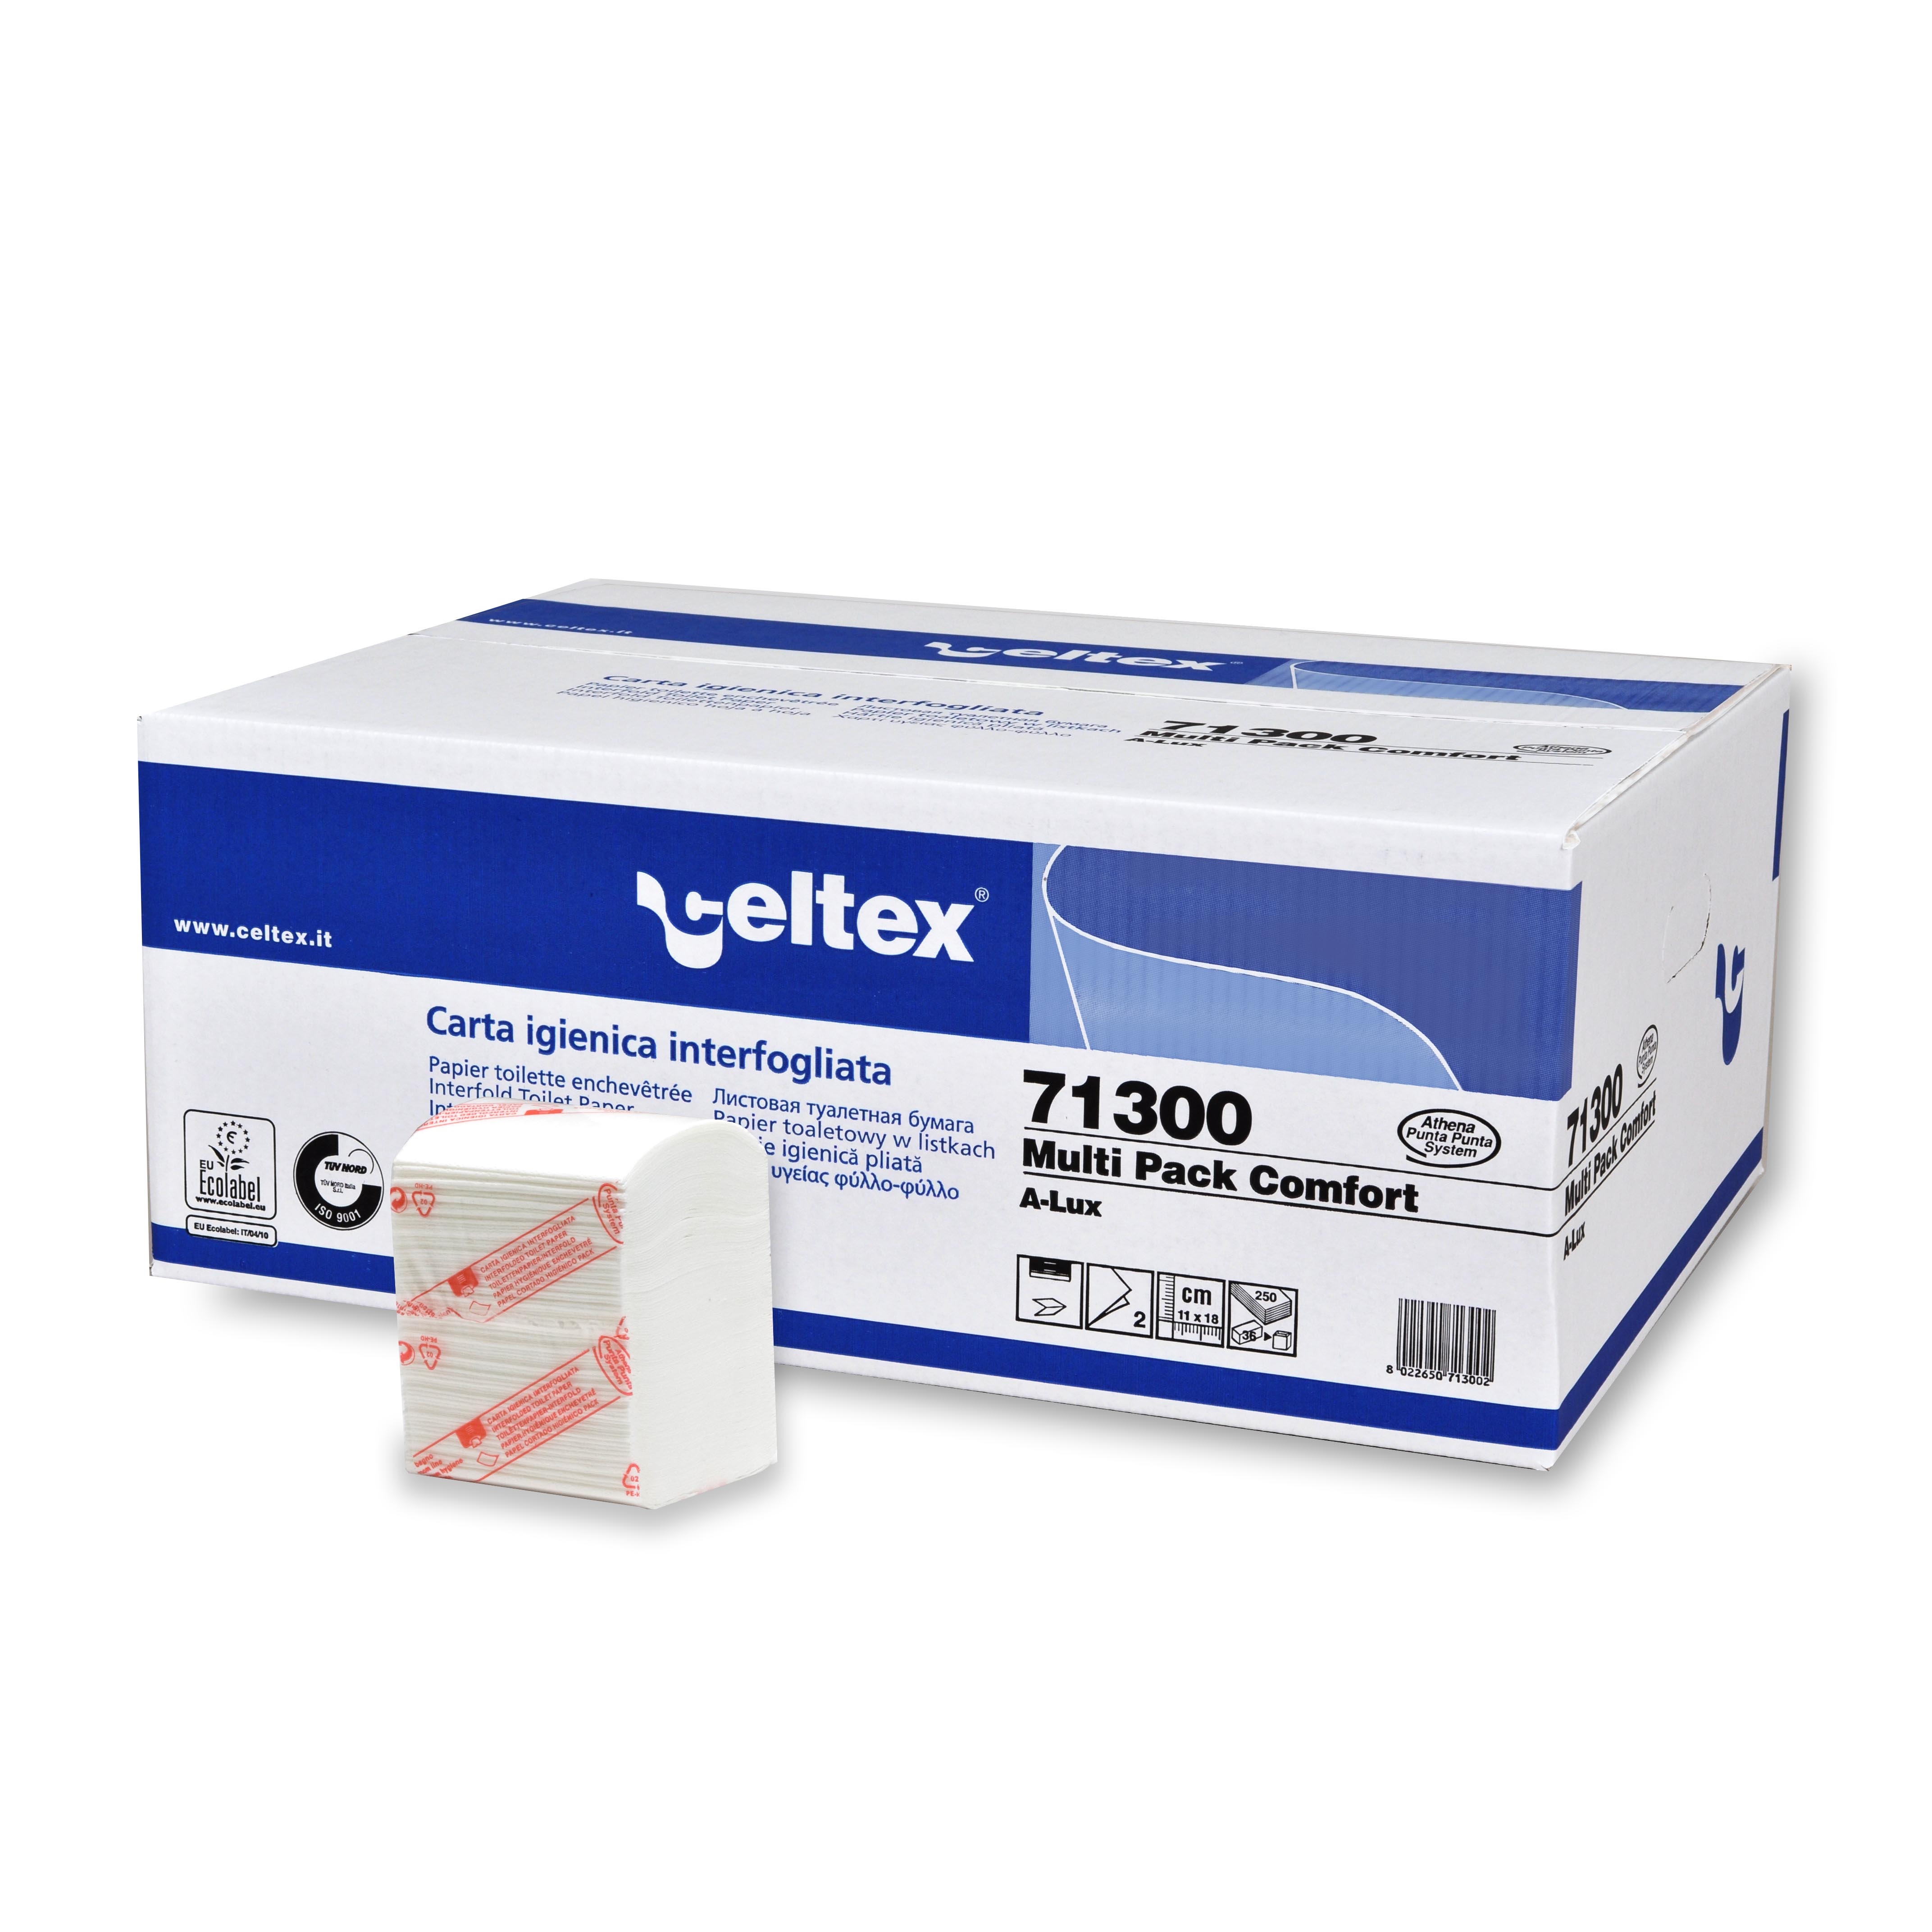 Toaletní papír Celtex Comfort skládaný 2vrstvy bílý (71300)